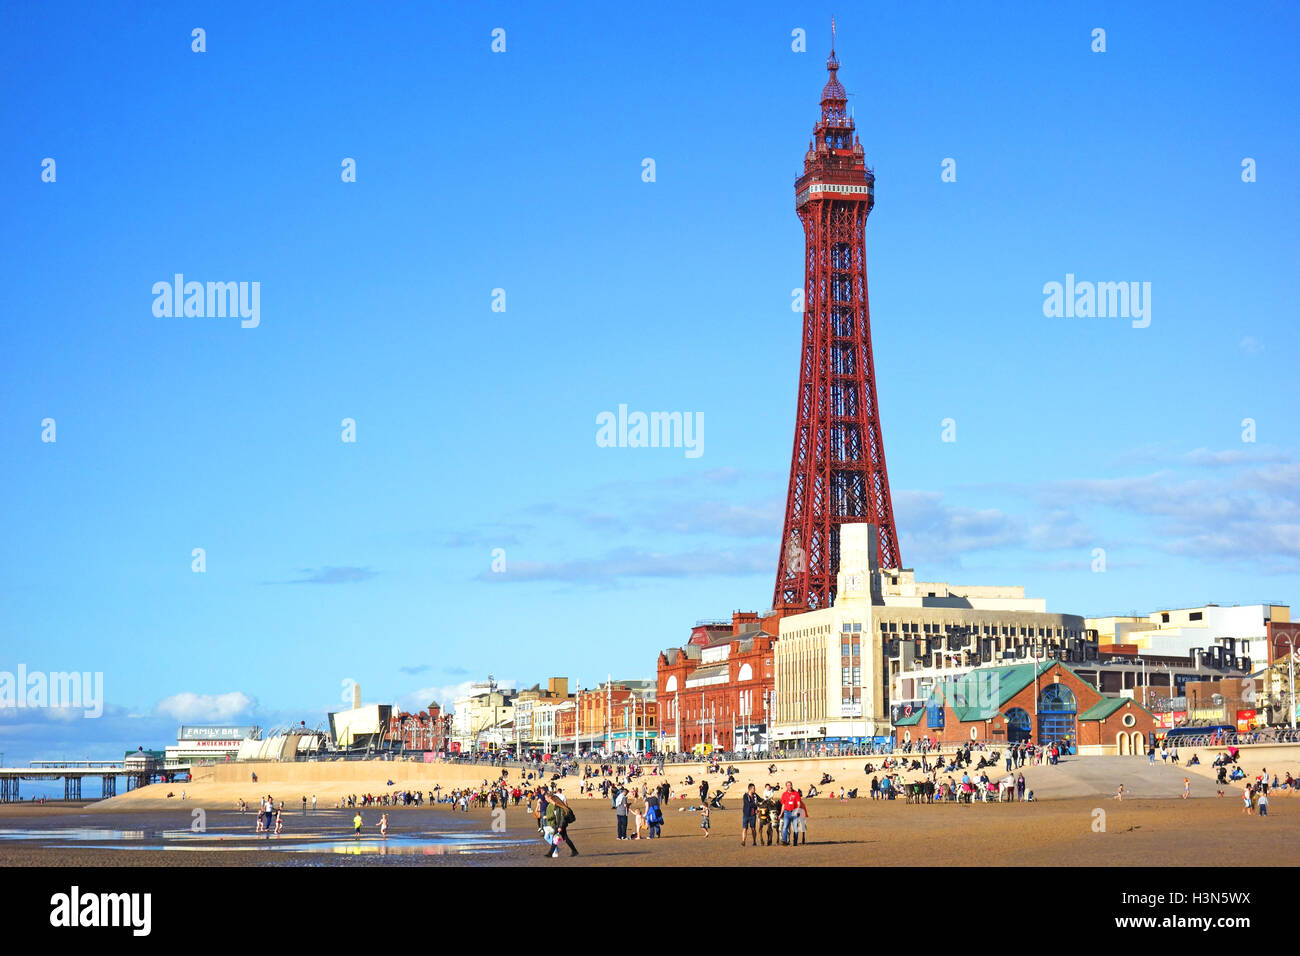 Blackpool, Lancashire, England, UK Stock Photo